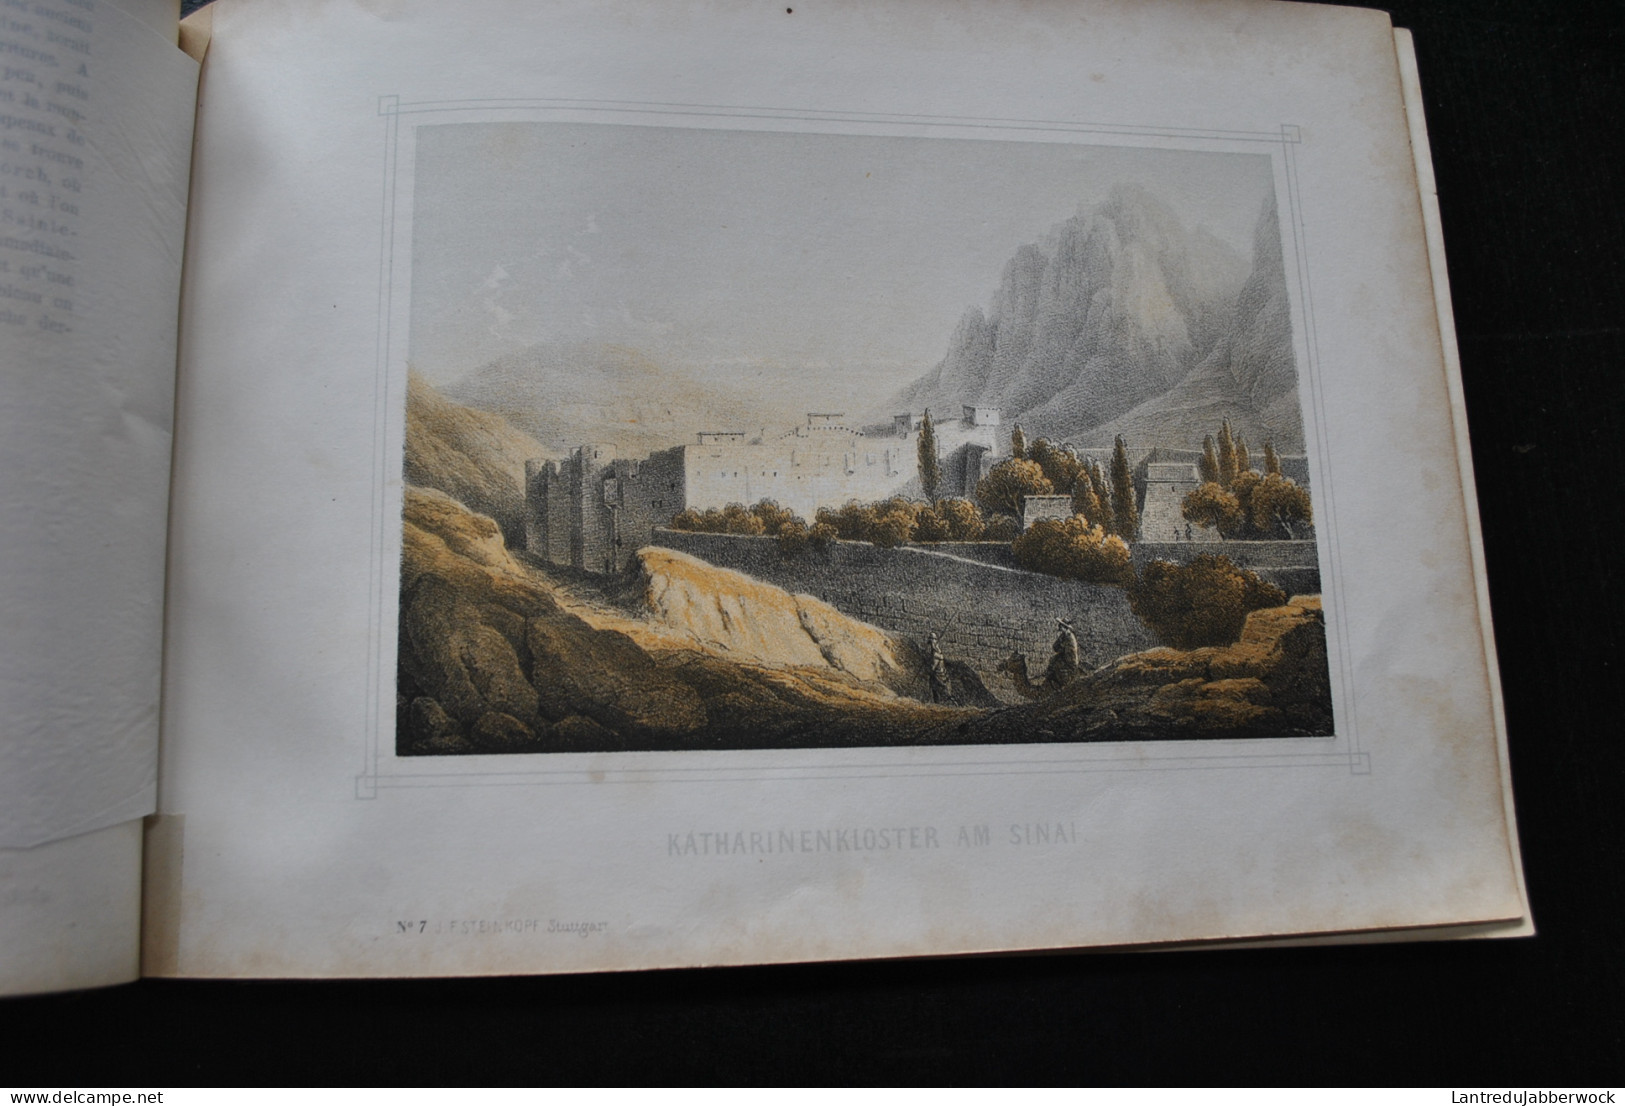 BERNATZ ROTH Album de la Terre Sainte Album des heiligen Landes Album of the Lands of the Bible 1858 Gravures Couleurs